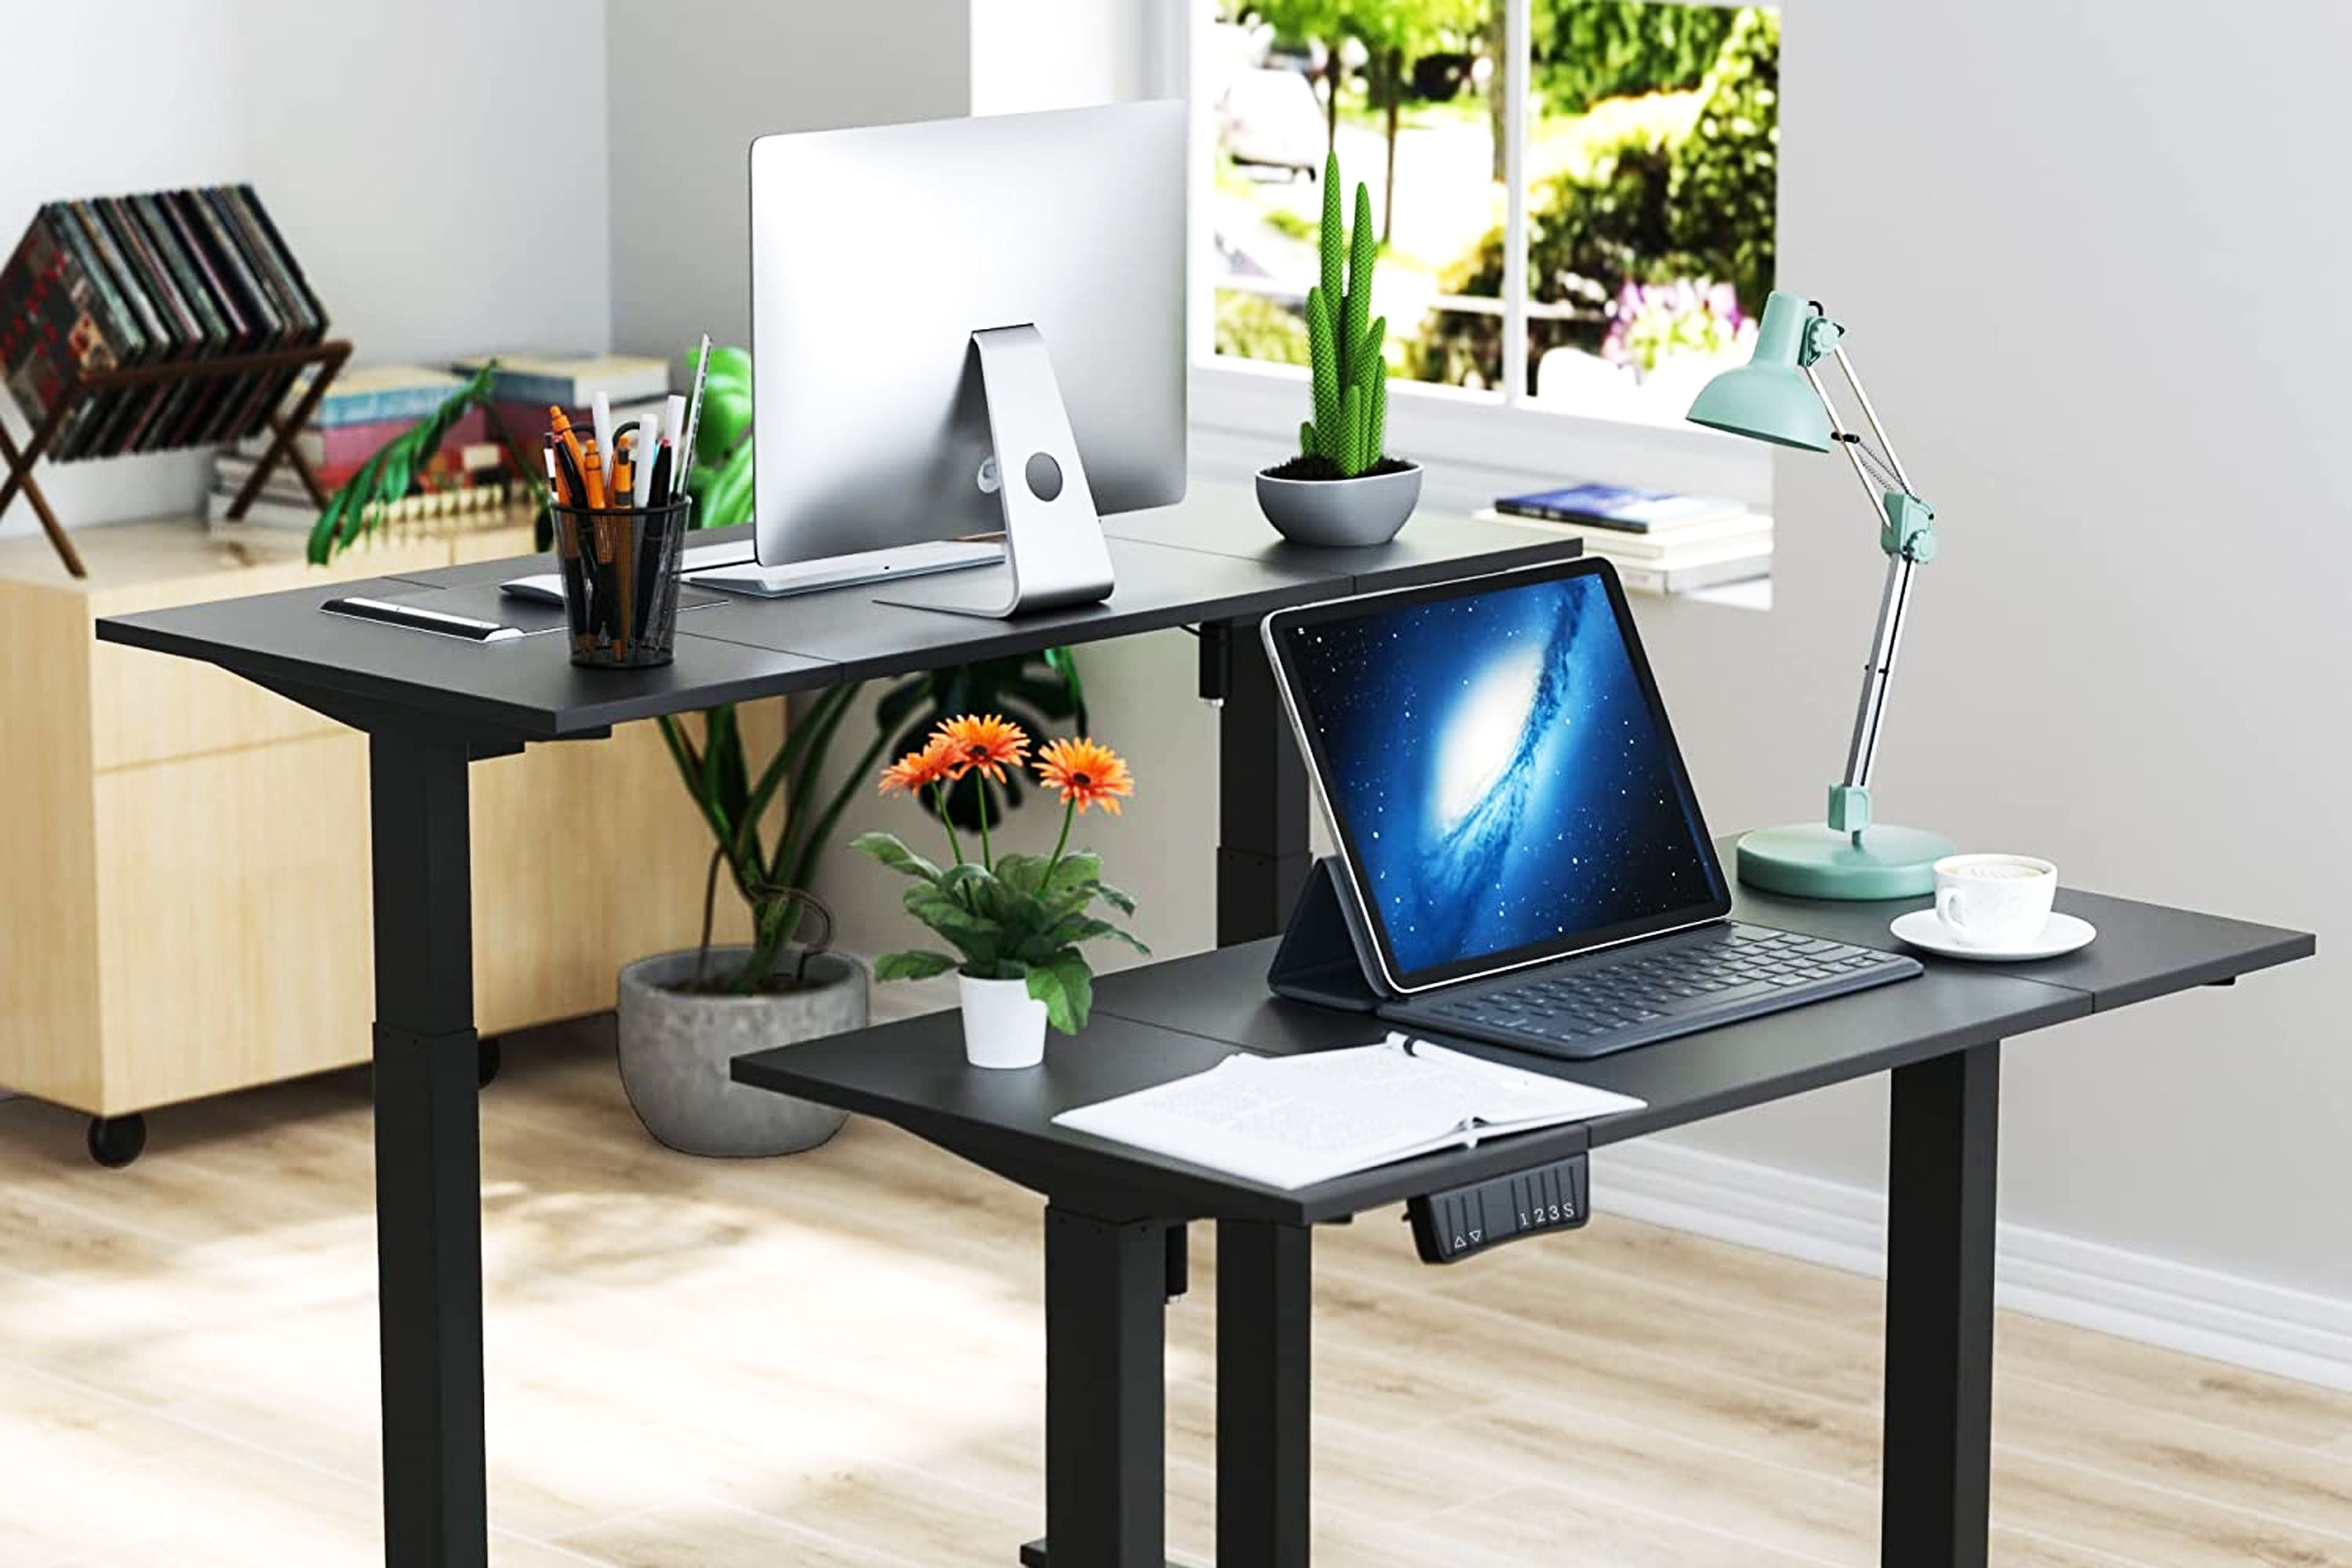 Es barato, es elevable y es estable: este escritorio puede ser la